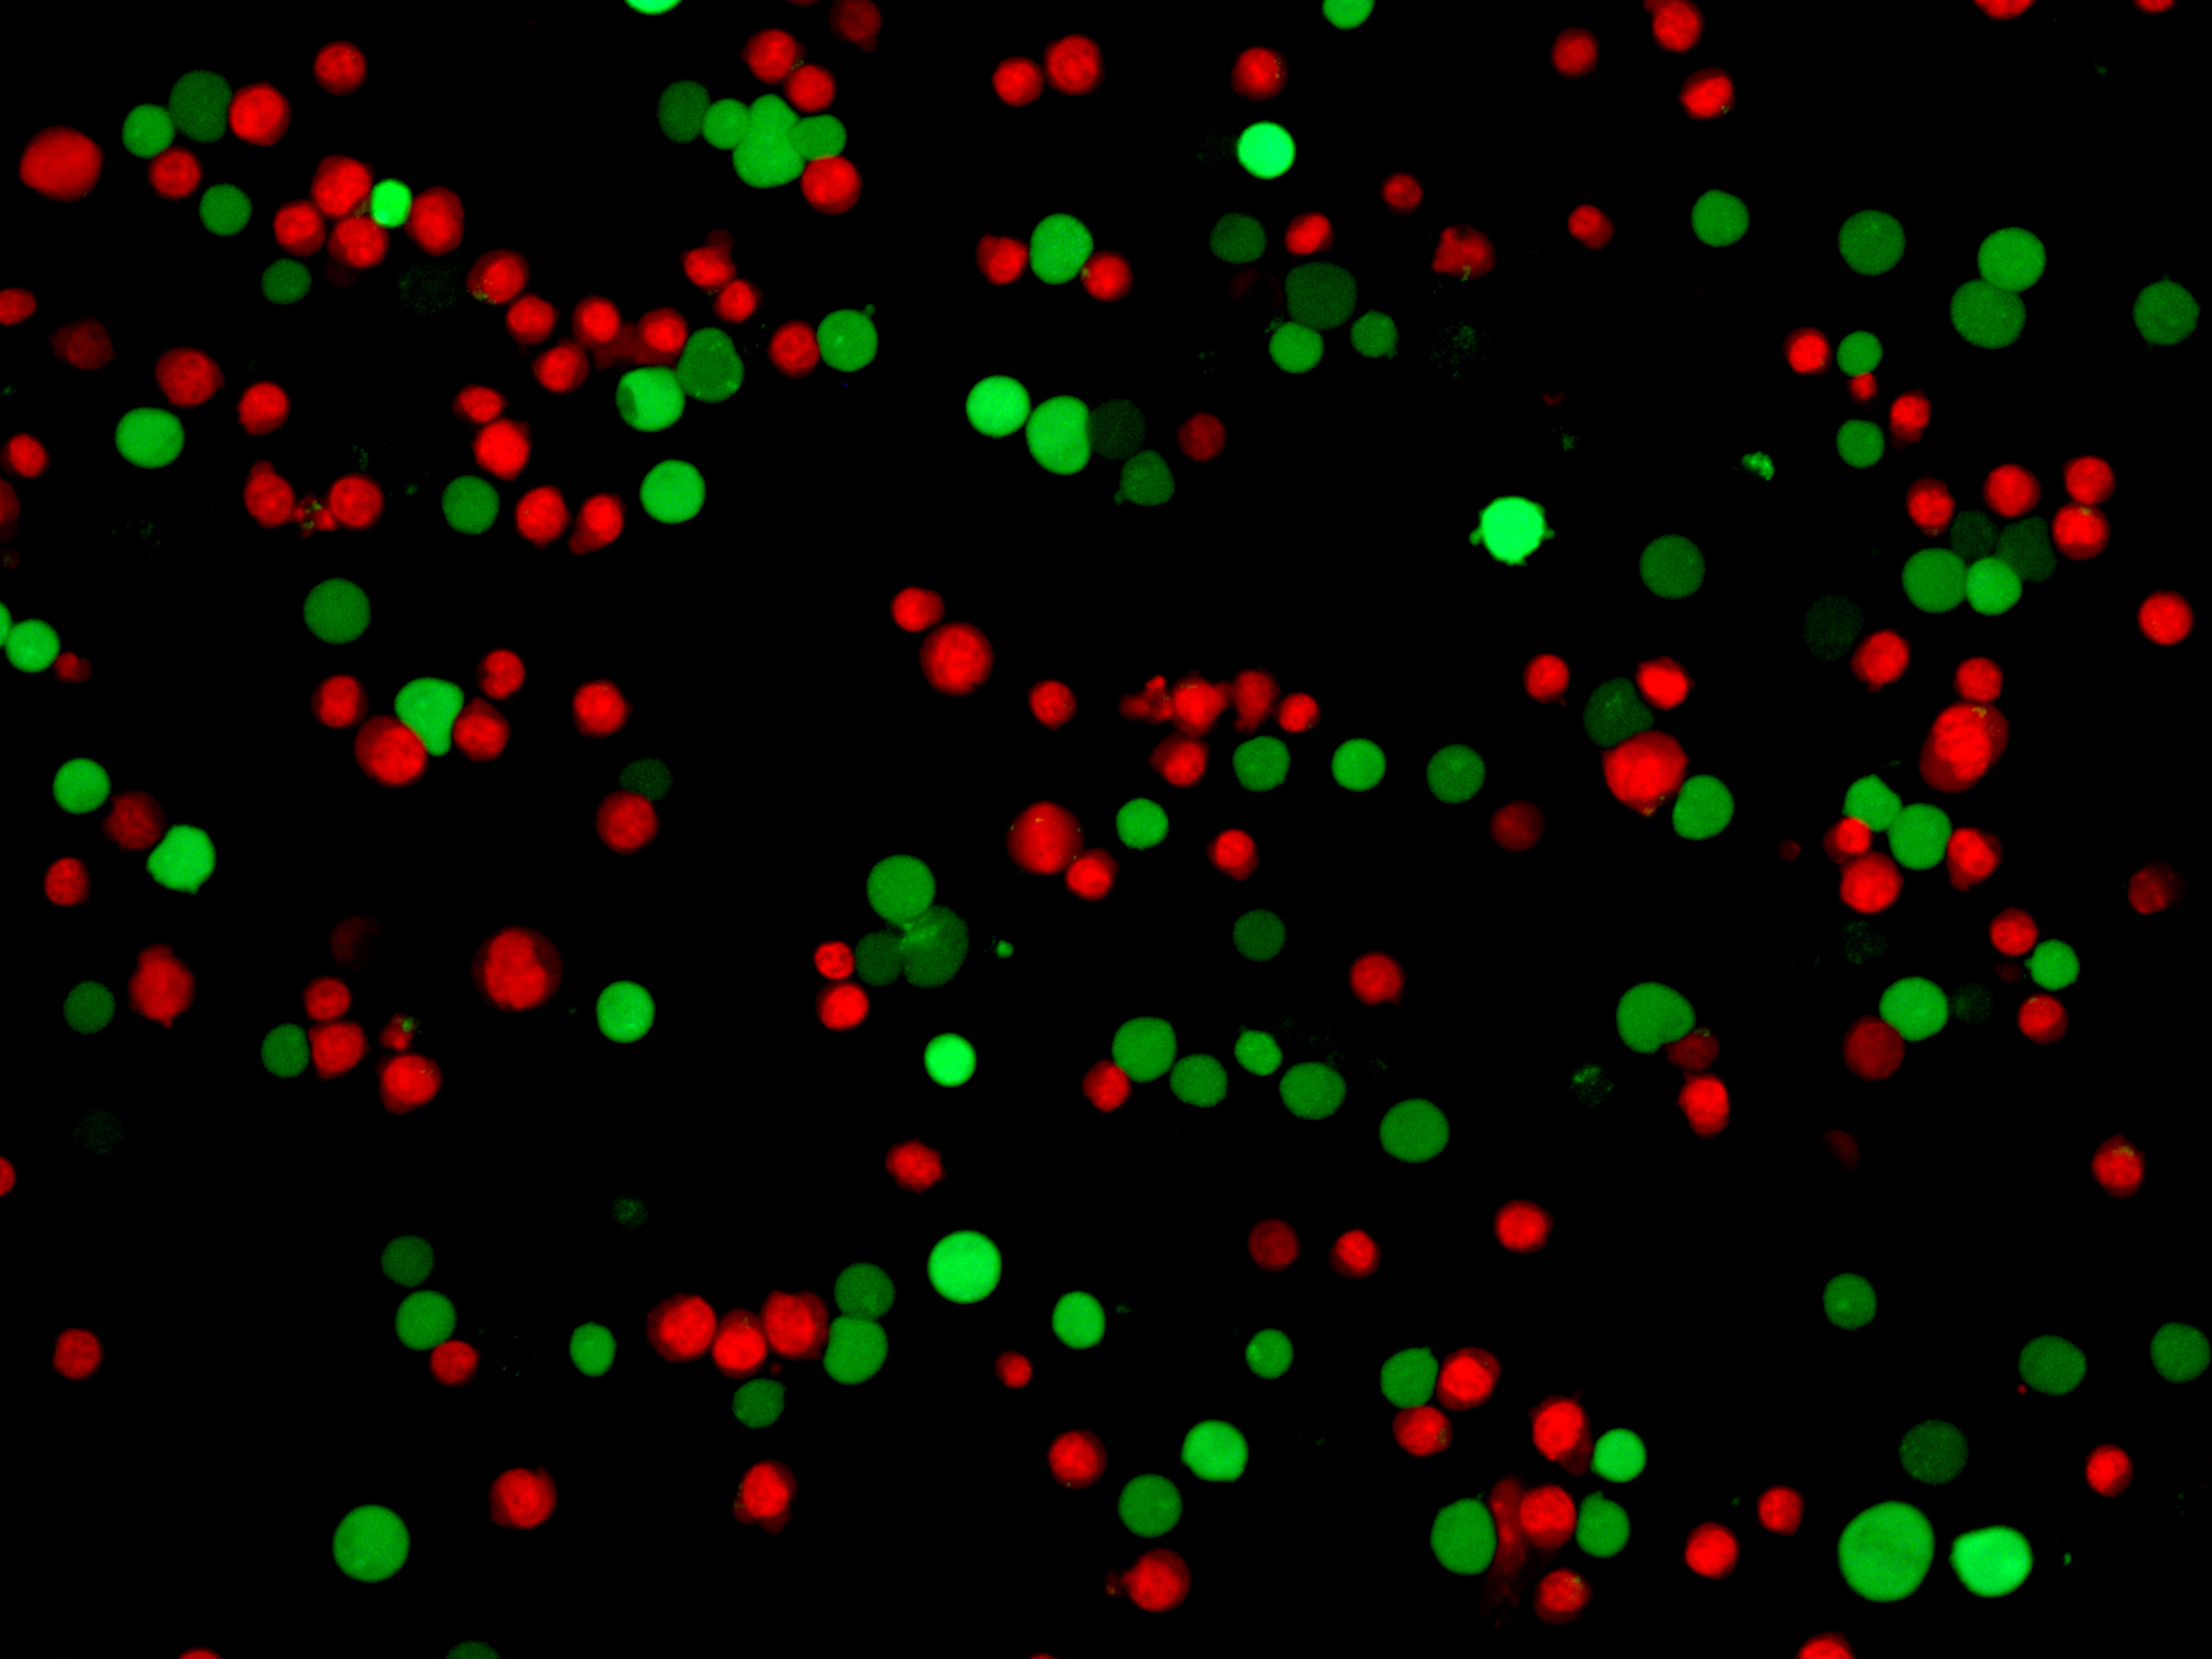 Cell: Jurkat；
Green: Calcein AM；
Red: PI.